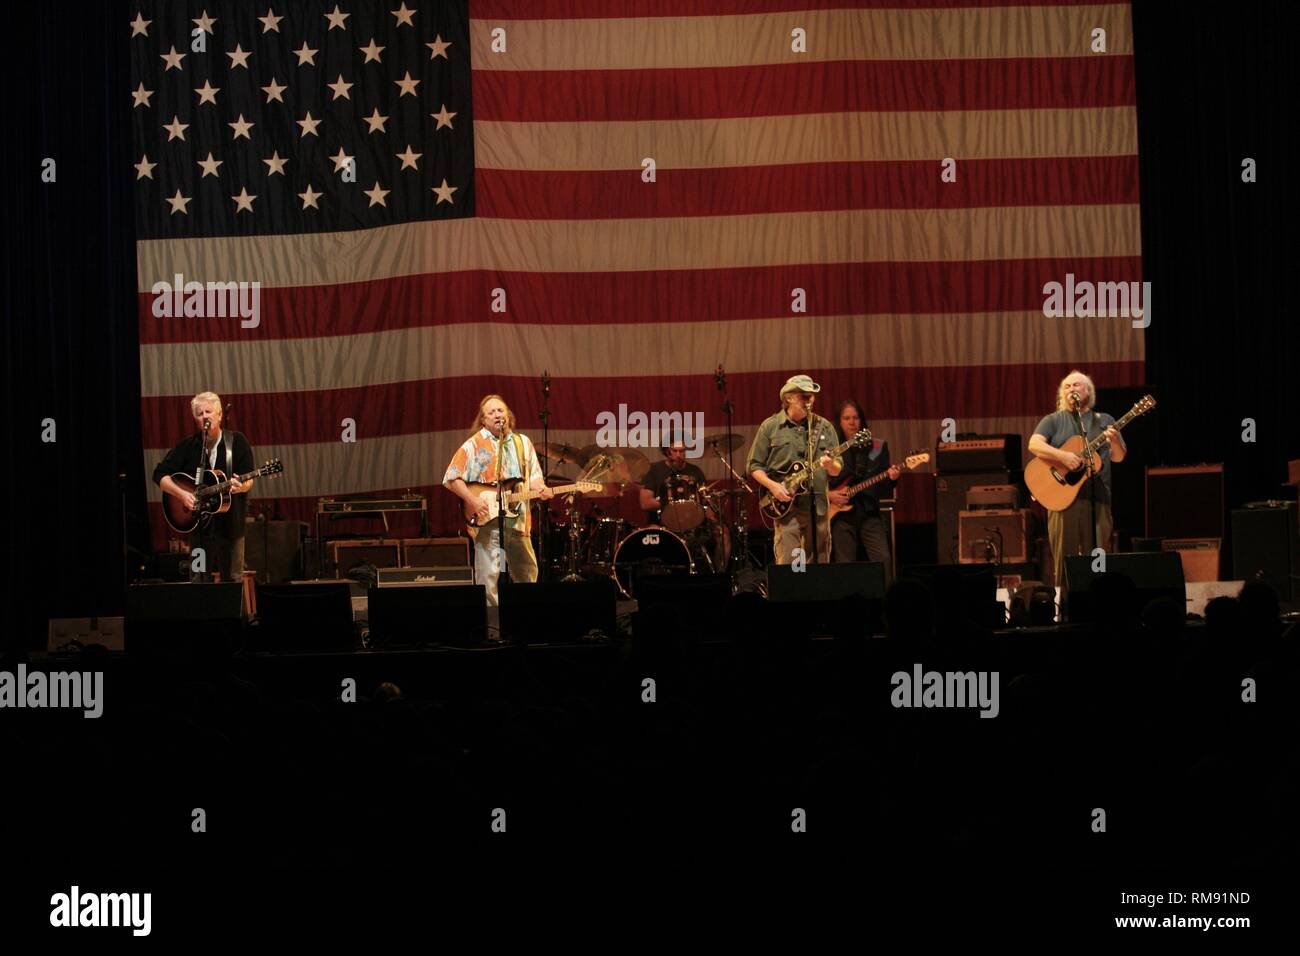 Stephen Stills, Graham Nash, Neil Young und David Crosby dargestellt auf der Bühne während eines CSN&Y Konzert aussehen. Stockfoto